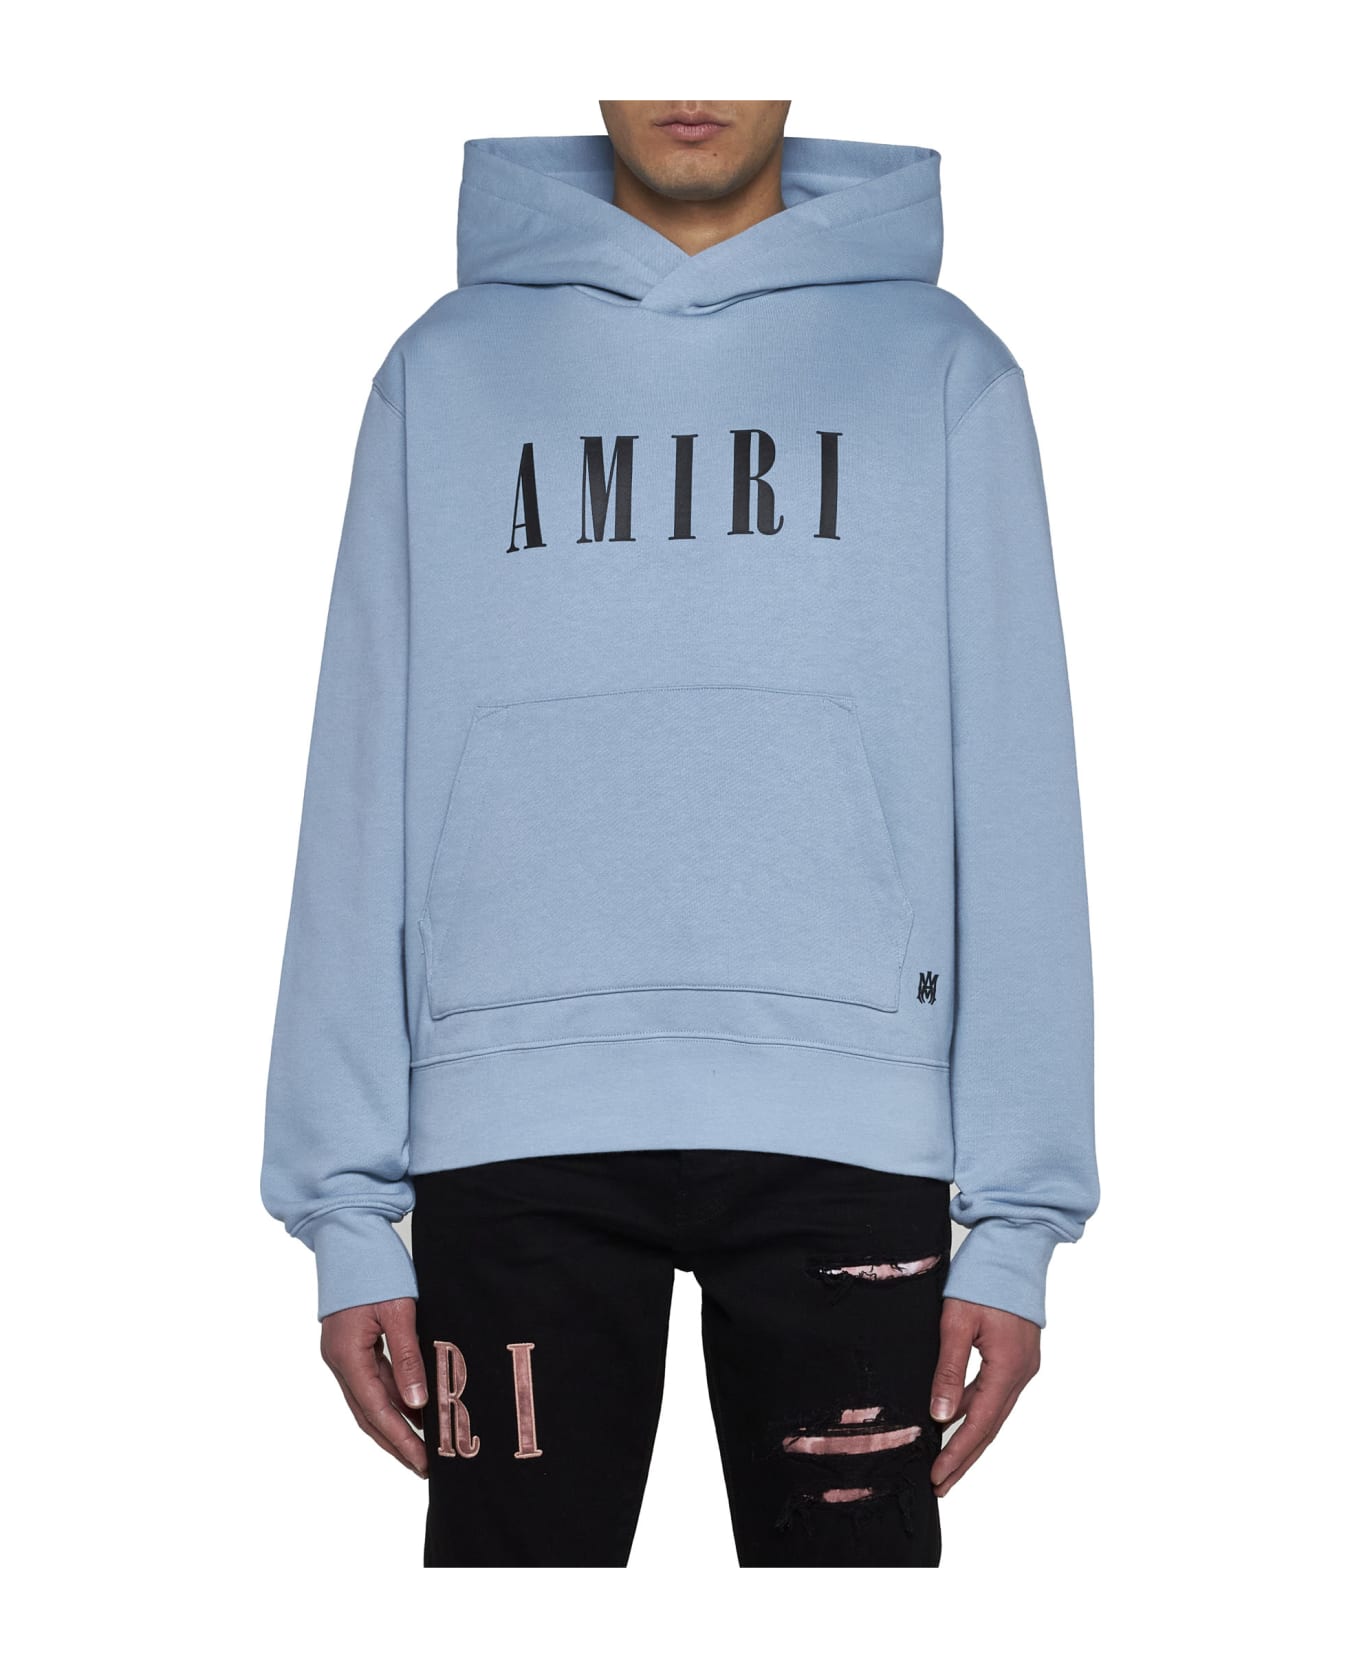 AMIRI Sweater - Ashley blue